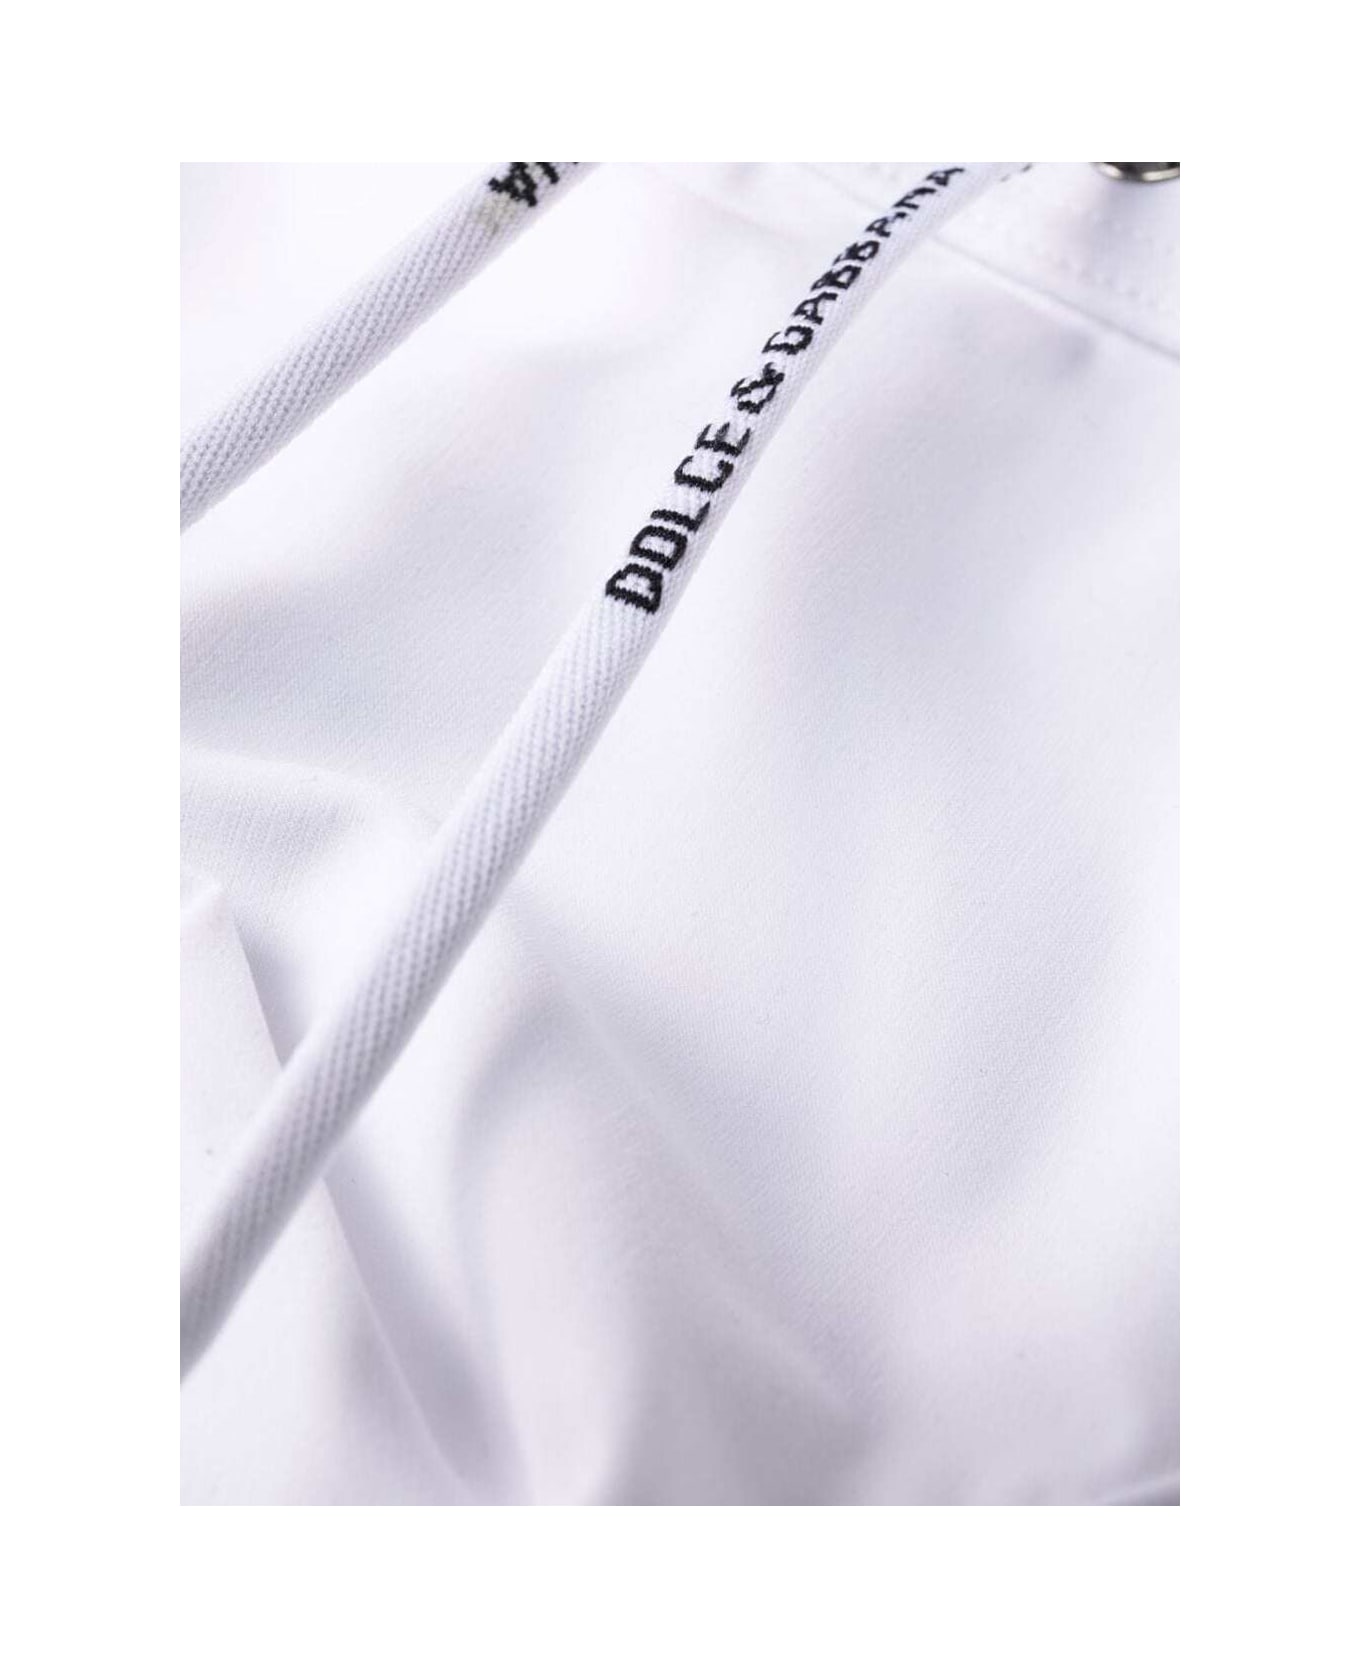 Dolce & Gabbana Swimming Briefs - White ショーツ